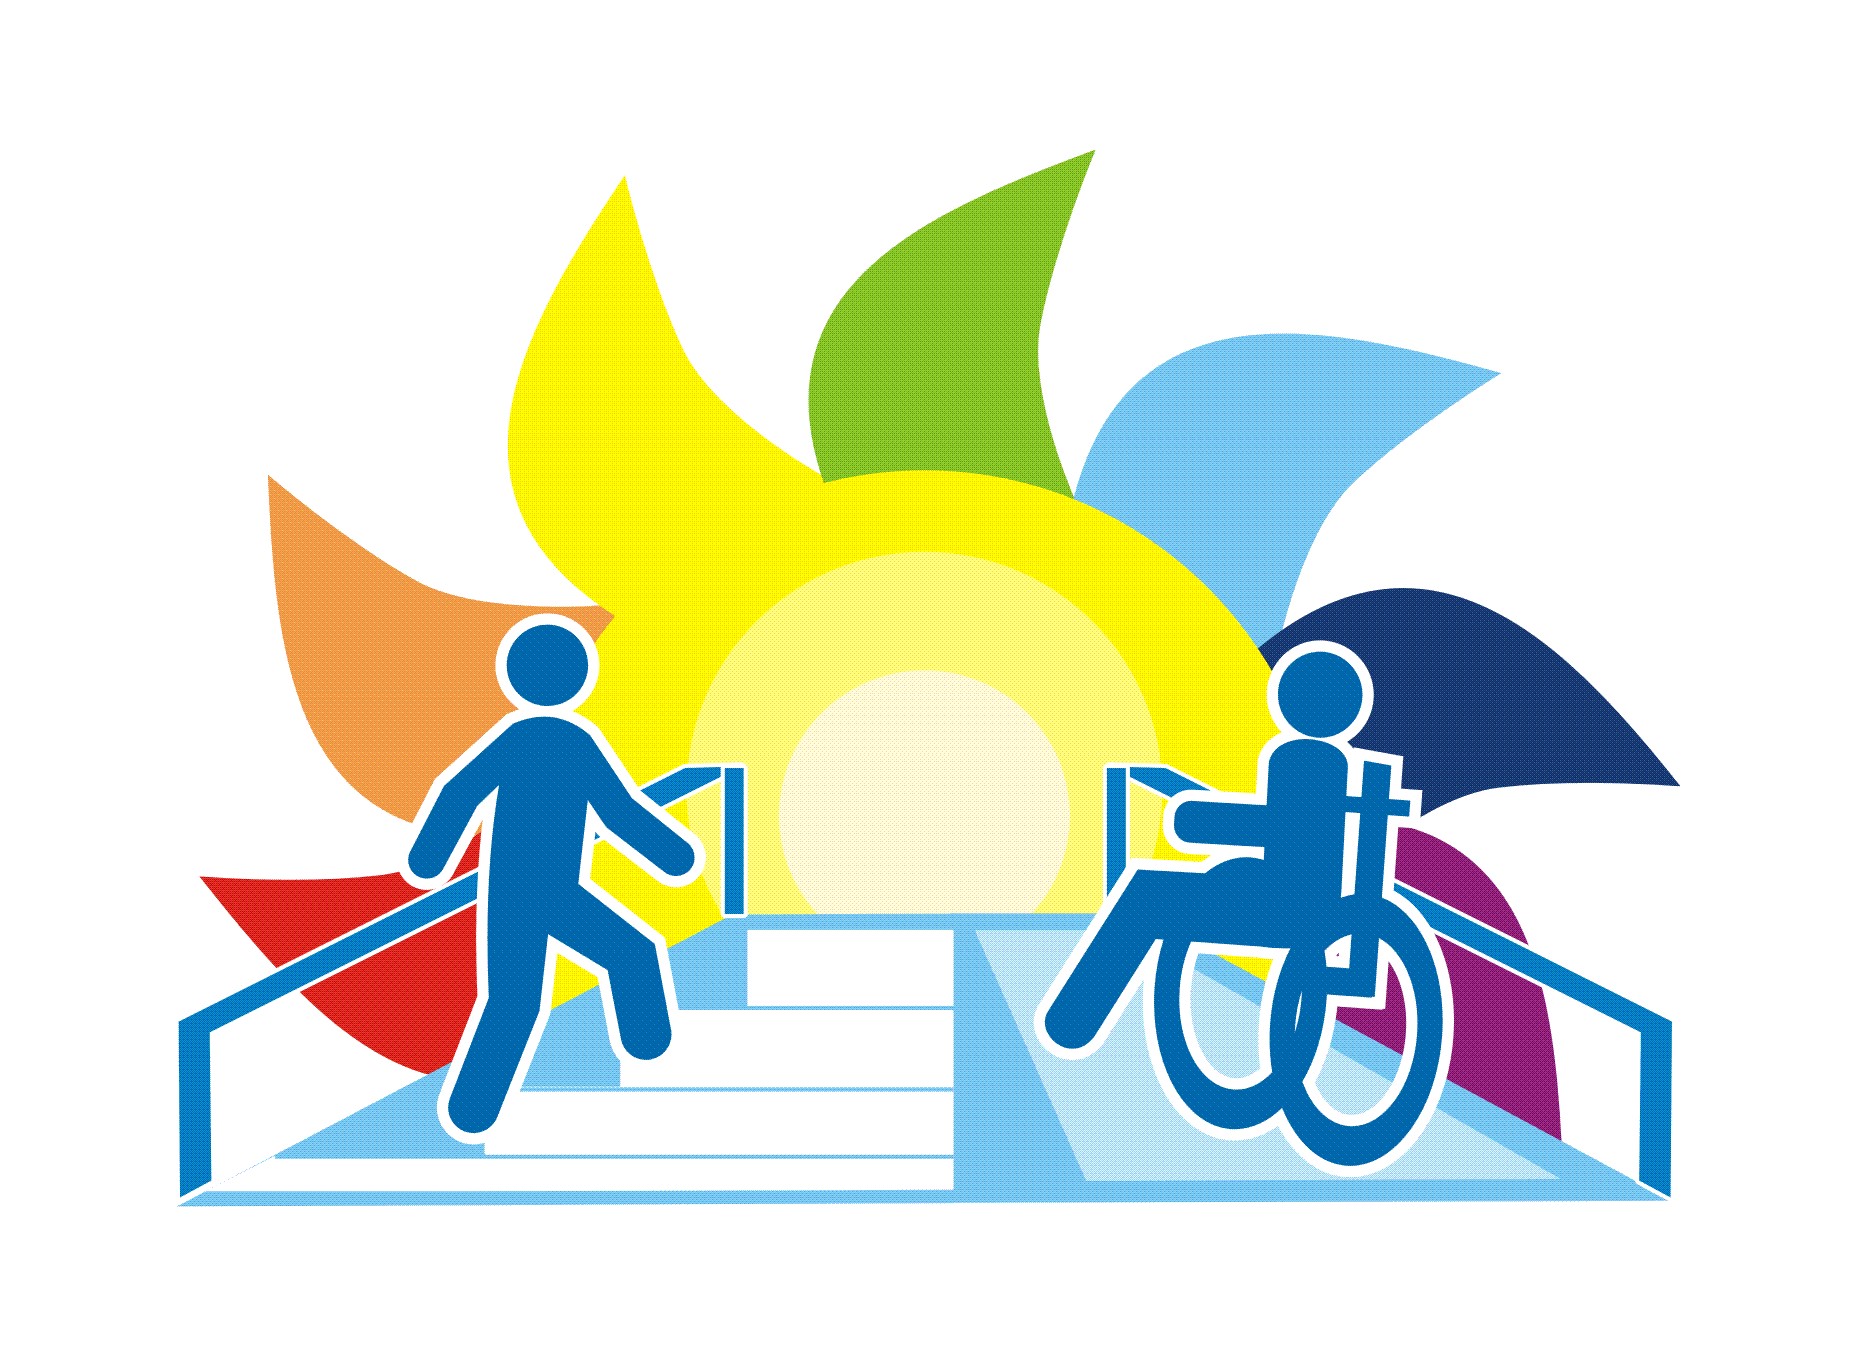 28.11.-04.12.2022 — Неделя укрепления здоровья и поддержки физической активности среди людей с инвалидностью  (в честь Международного дня инвалидов 3 декабря)